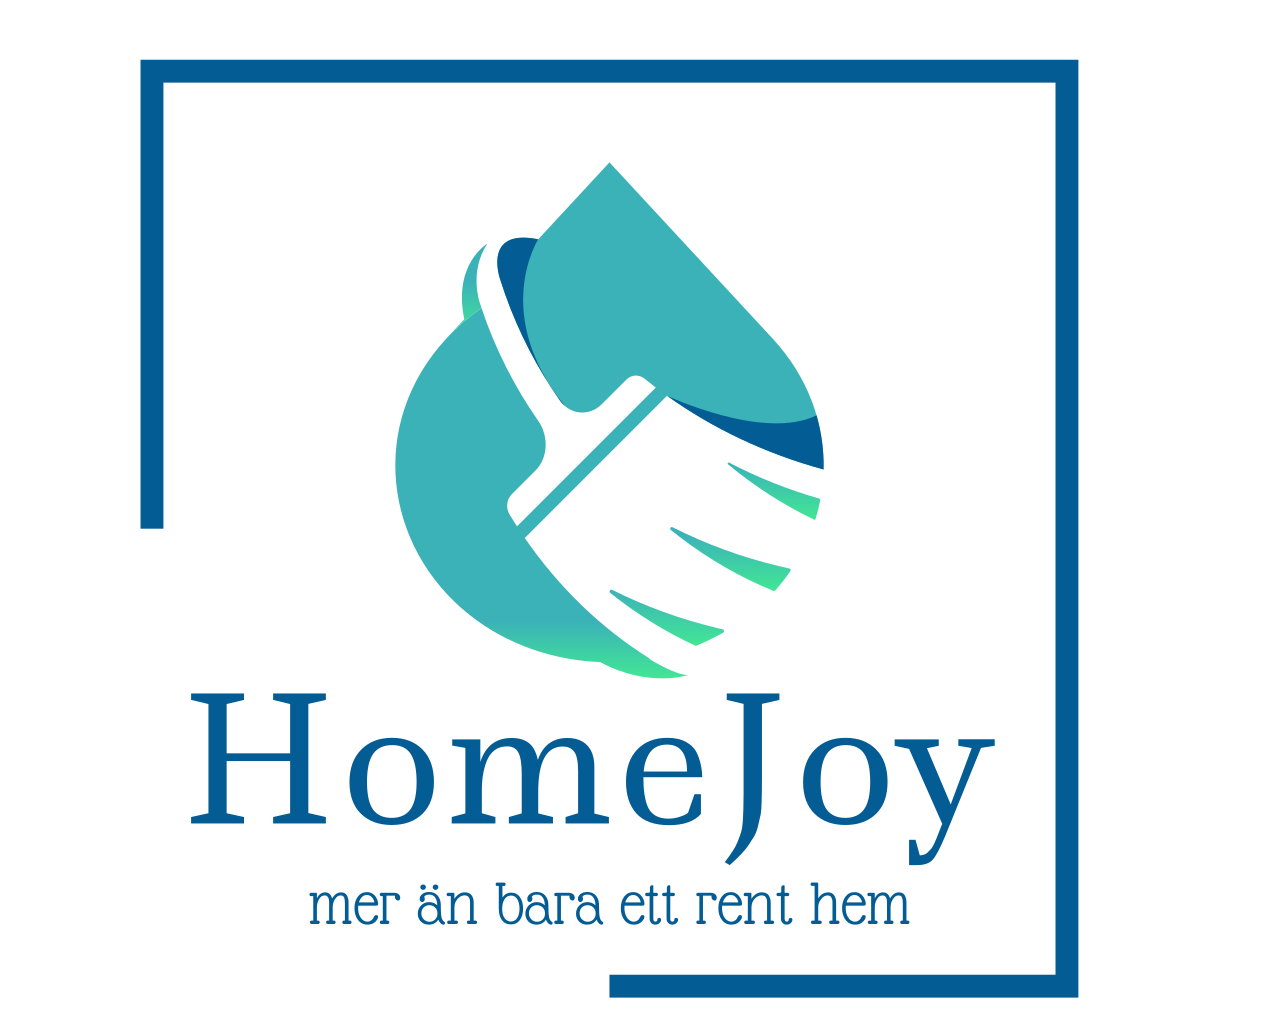 Städföretag - Homejoy - Hässleholm - Kristianstad